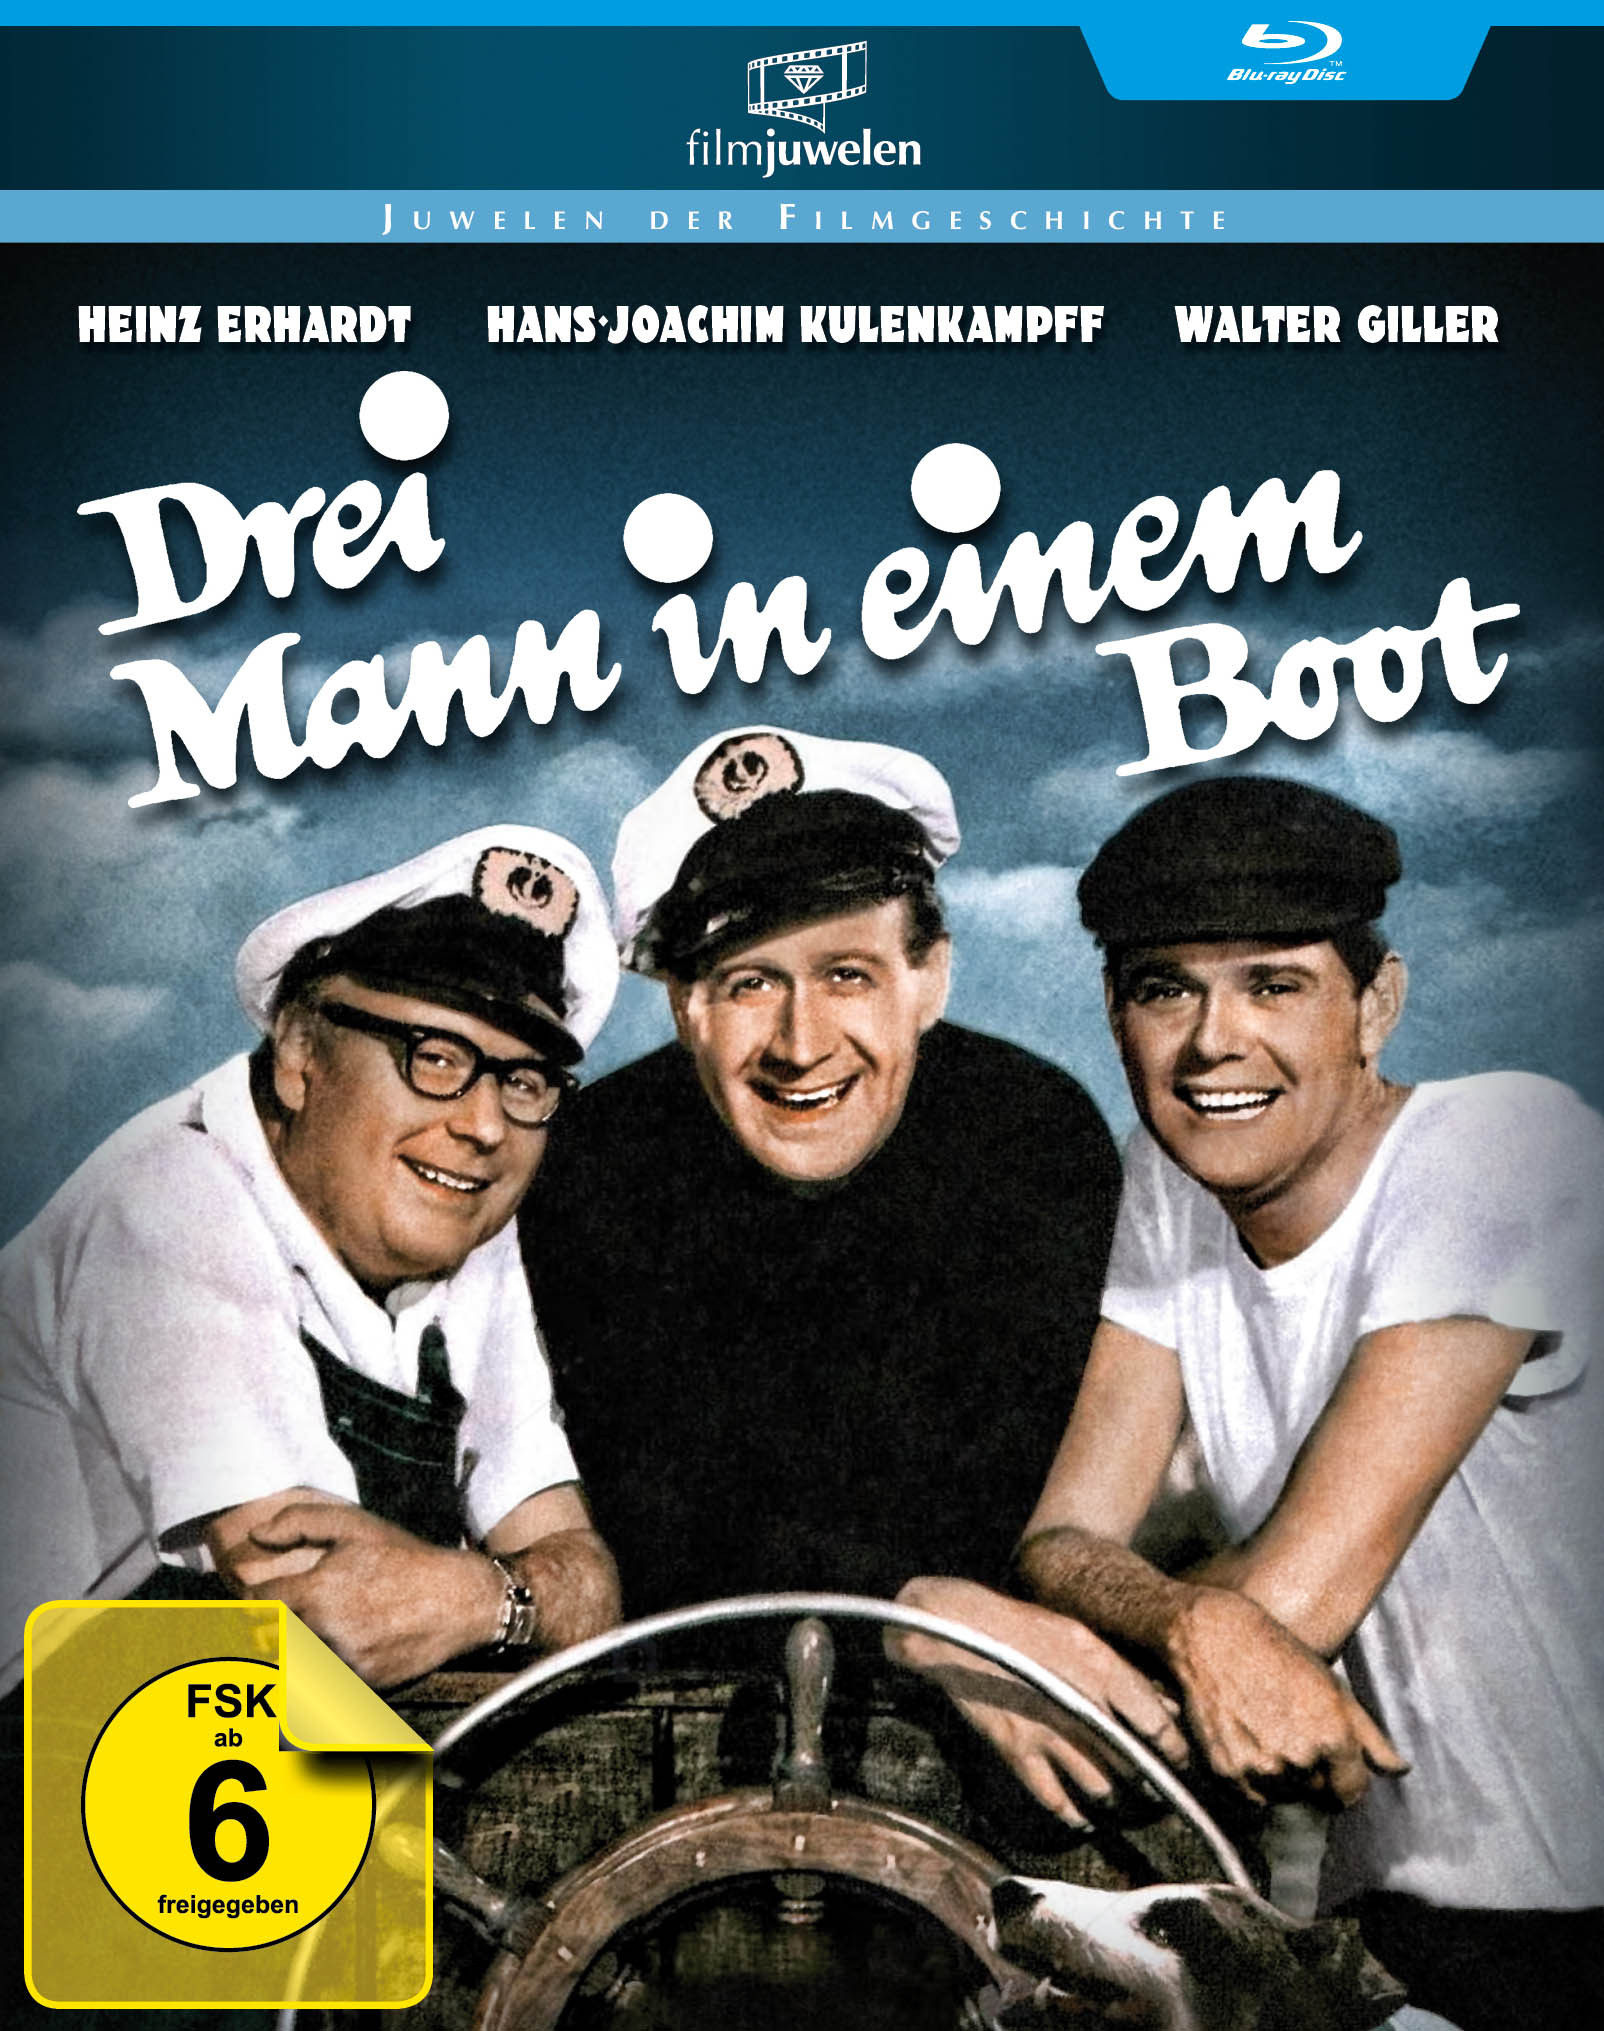 Image of Heinz Erhardt - Drei Mann in einem Boot Filmjuwelen